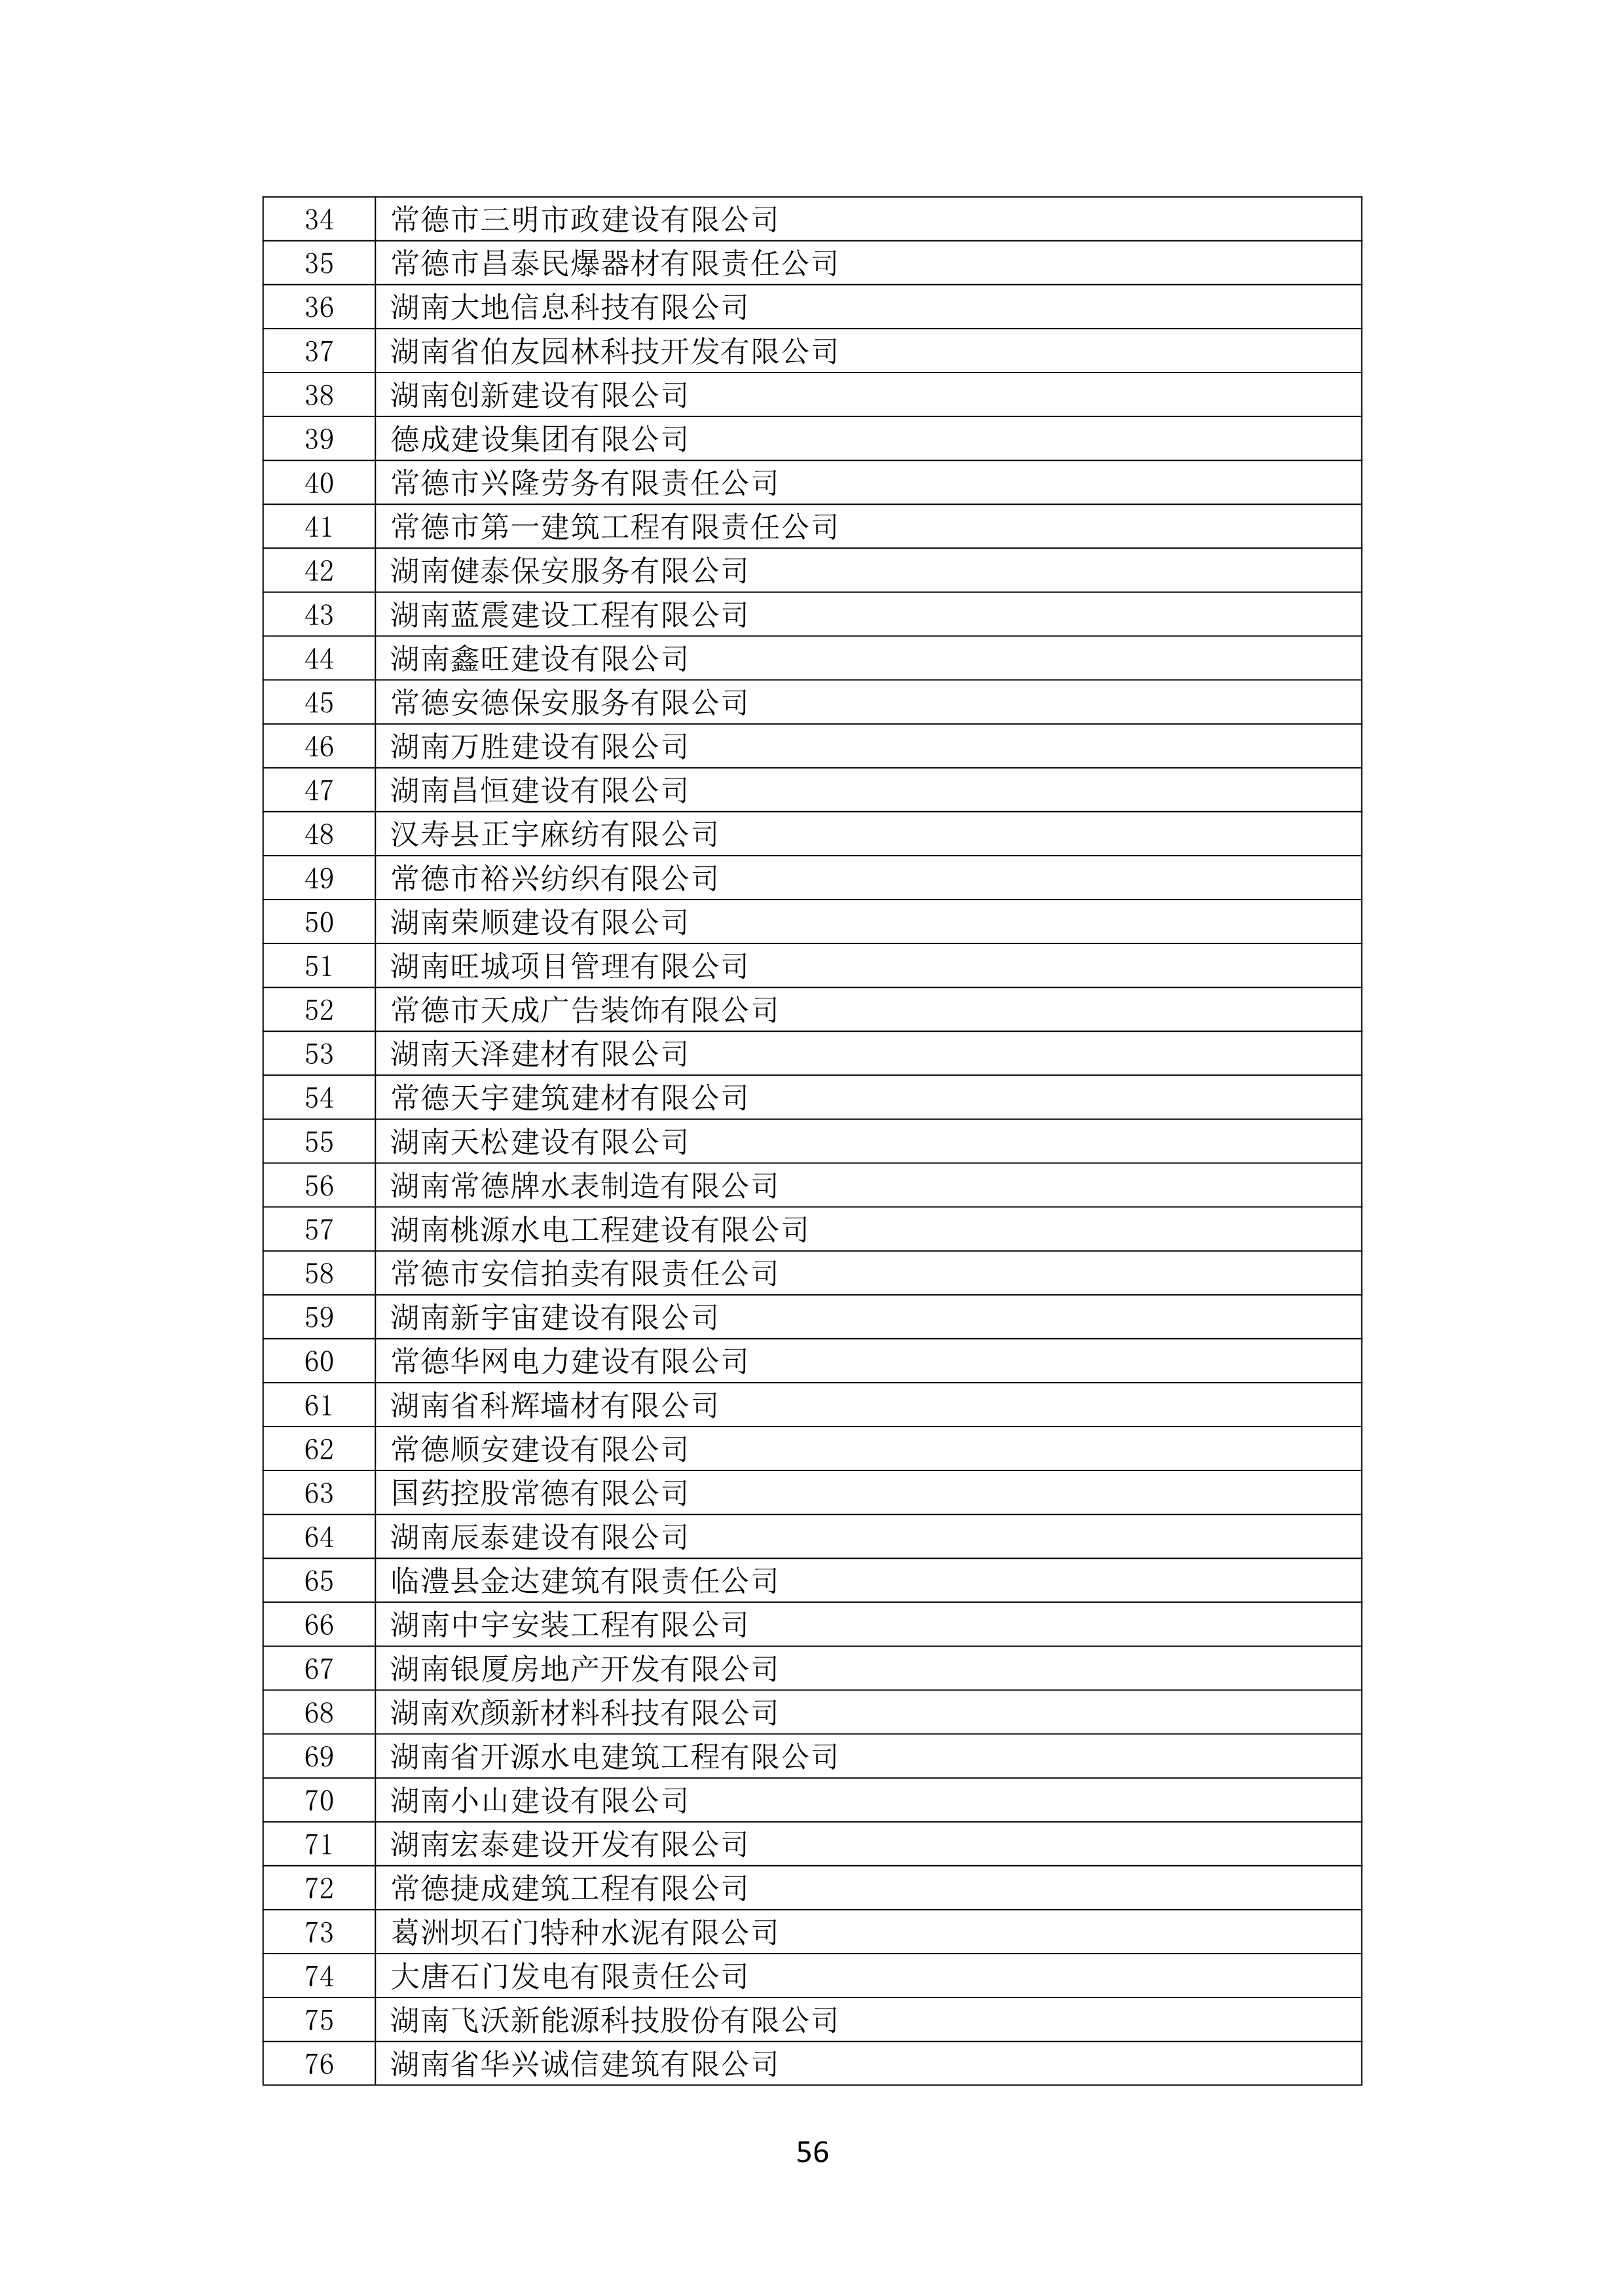 2021 年(nián)度湖南省守合同重信用企業名單_57.png